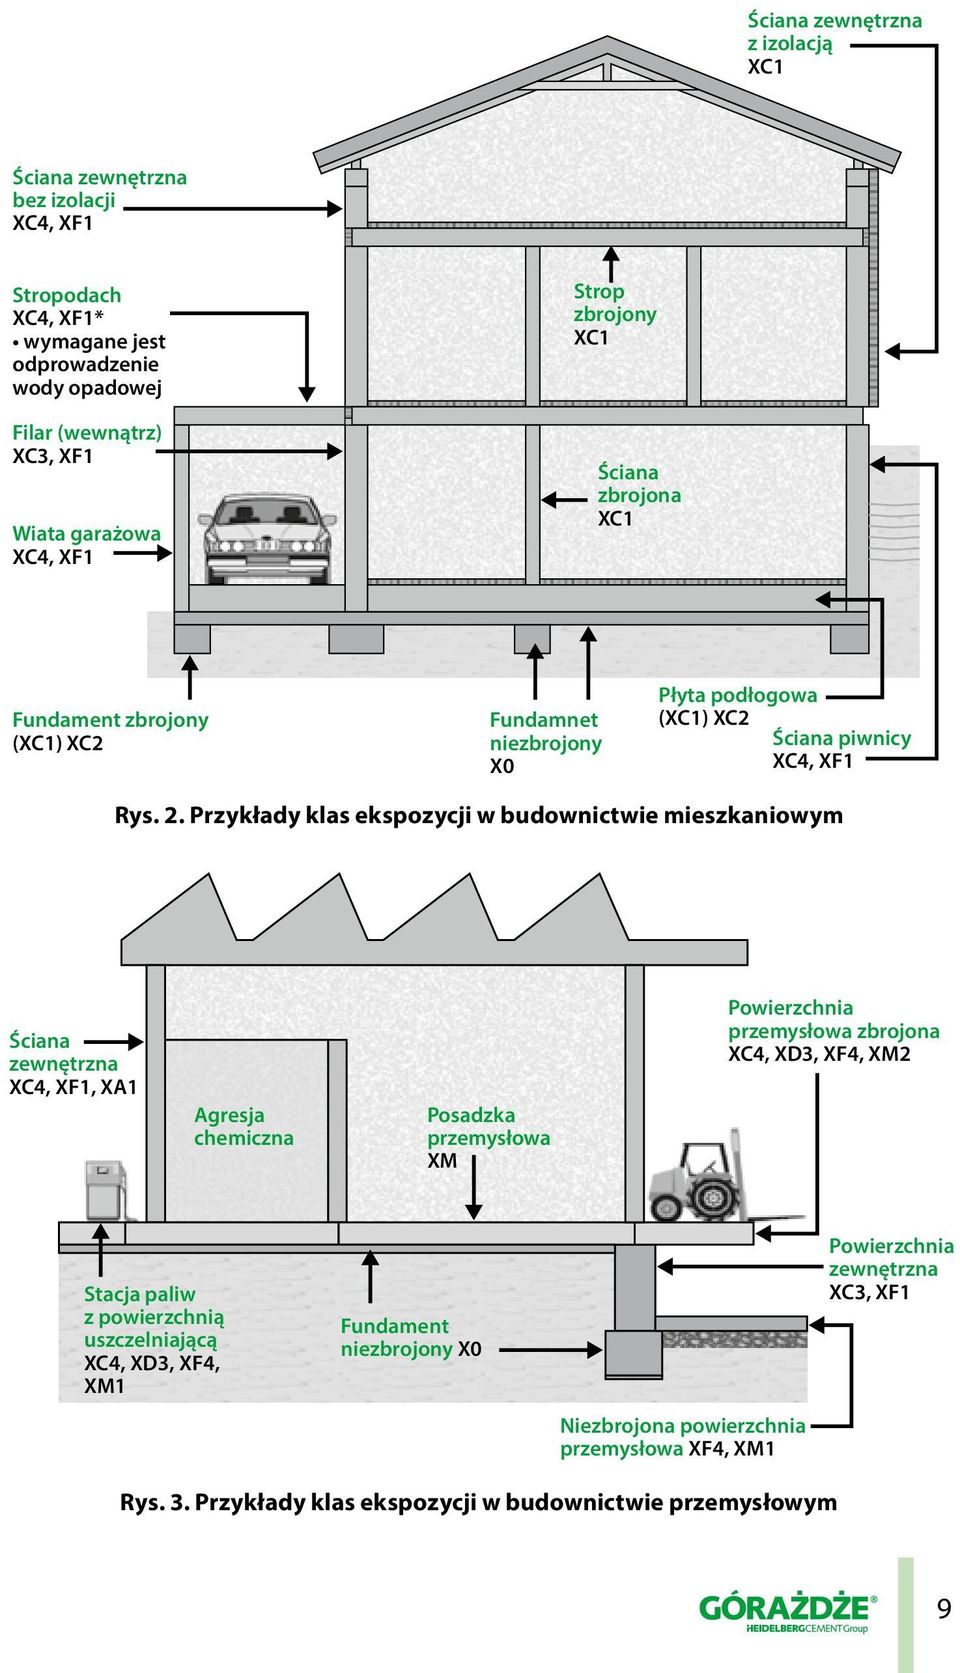 Przykłady klas ekspozycji w budownictwie mieszkaniowym Ściana zewnętrzna XC4, XF1, XA1 Agresja chemiczna Posadzka przemysłowa XM Powierzchnia przemysłowa zbrojona XC4, XD3, XF4, XM2